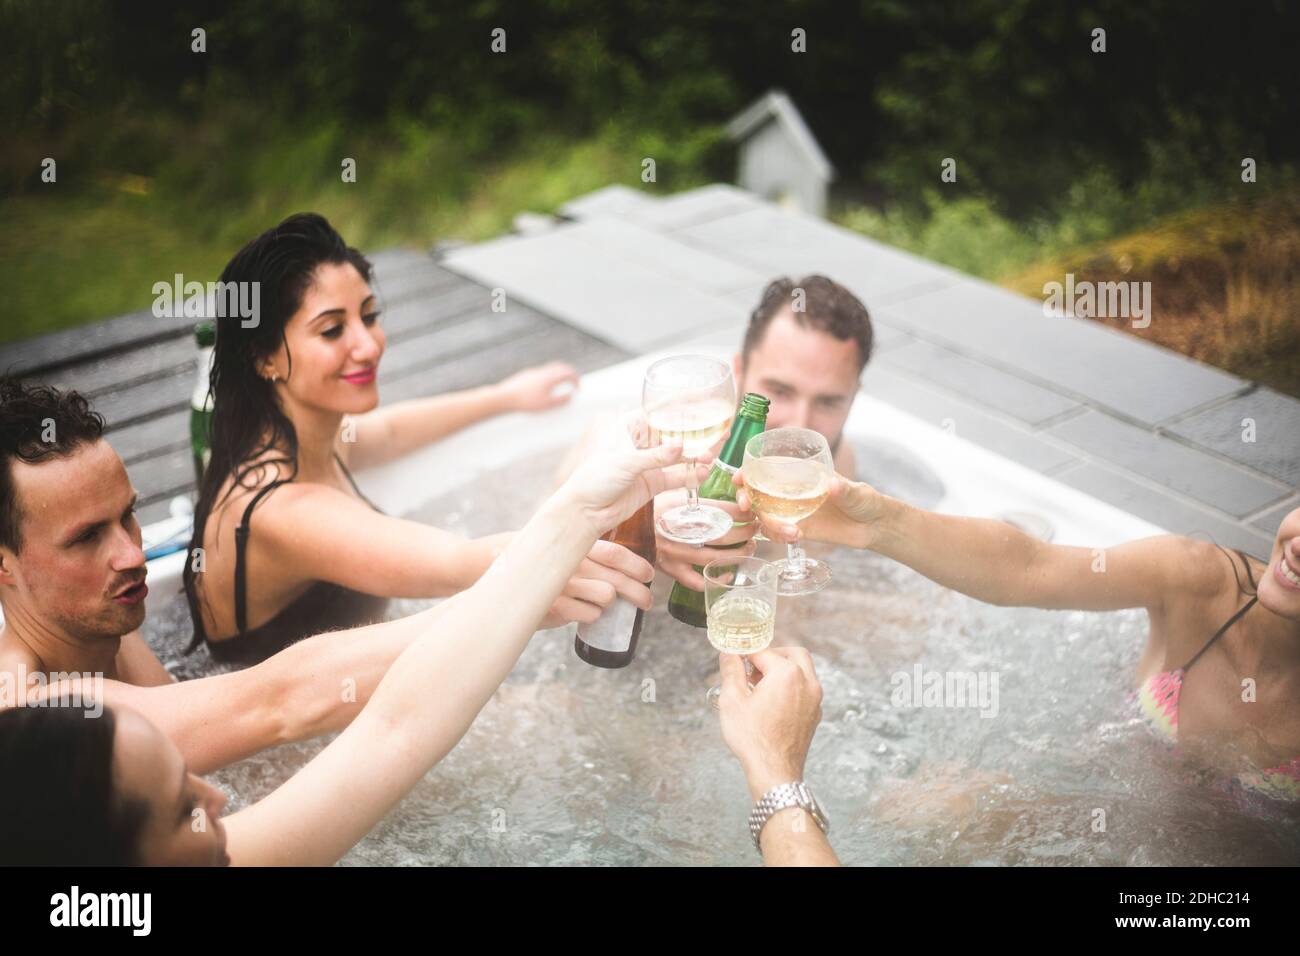 Spensierate amici maschi e femmine che tostano le bevande nella vasca idromassaggio durante la fuga del fine settimana Foto Stock